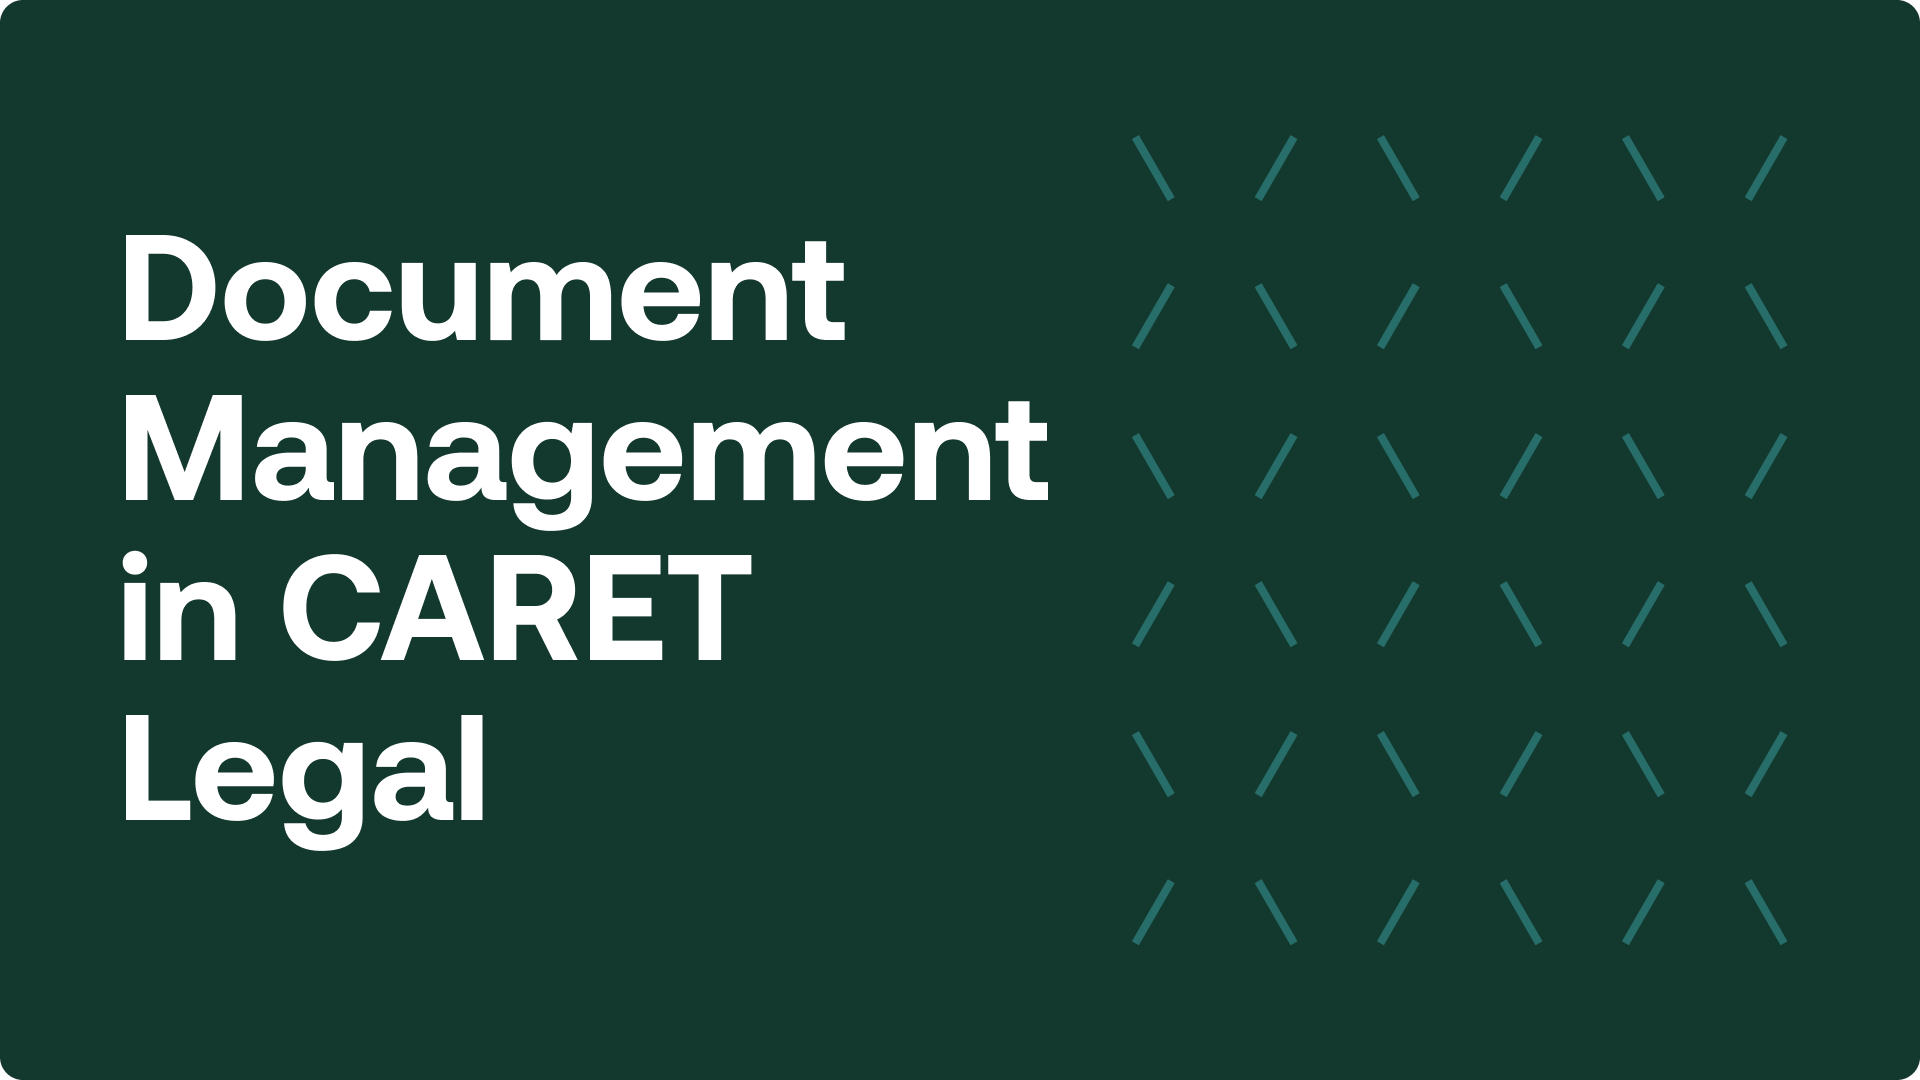 Document management in CARET Legal